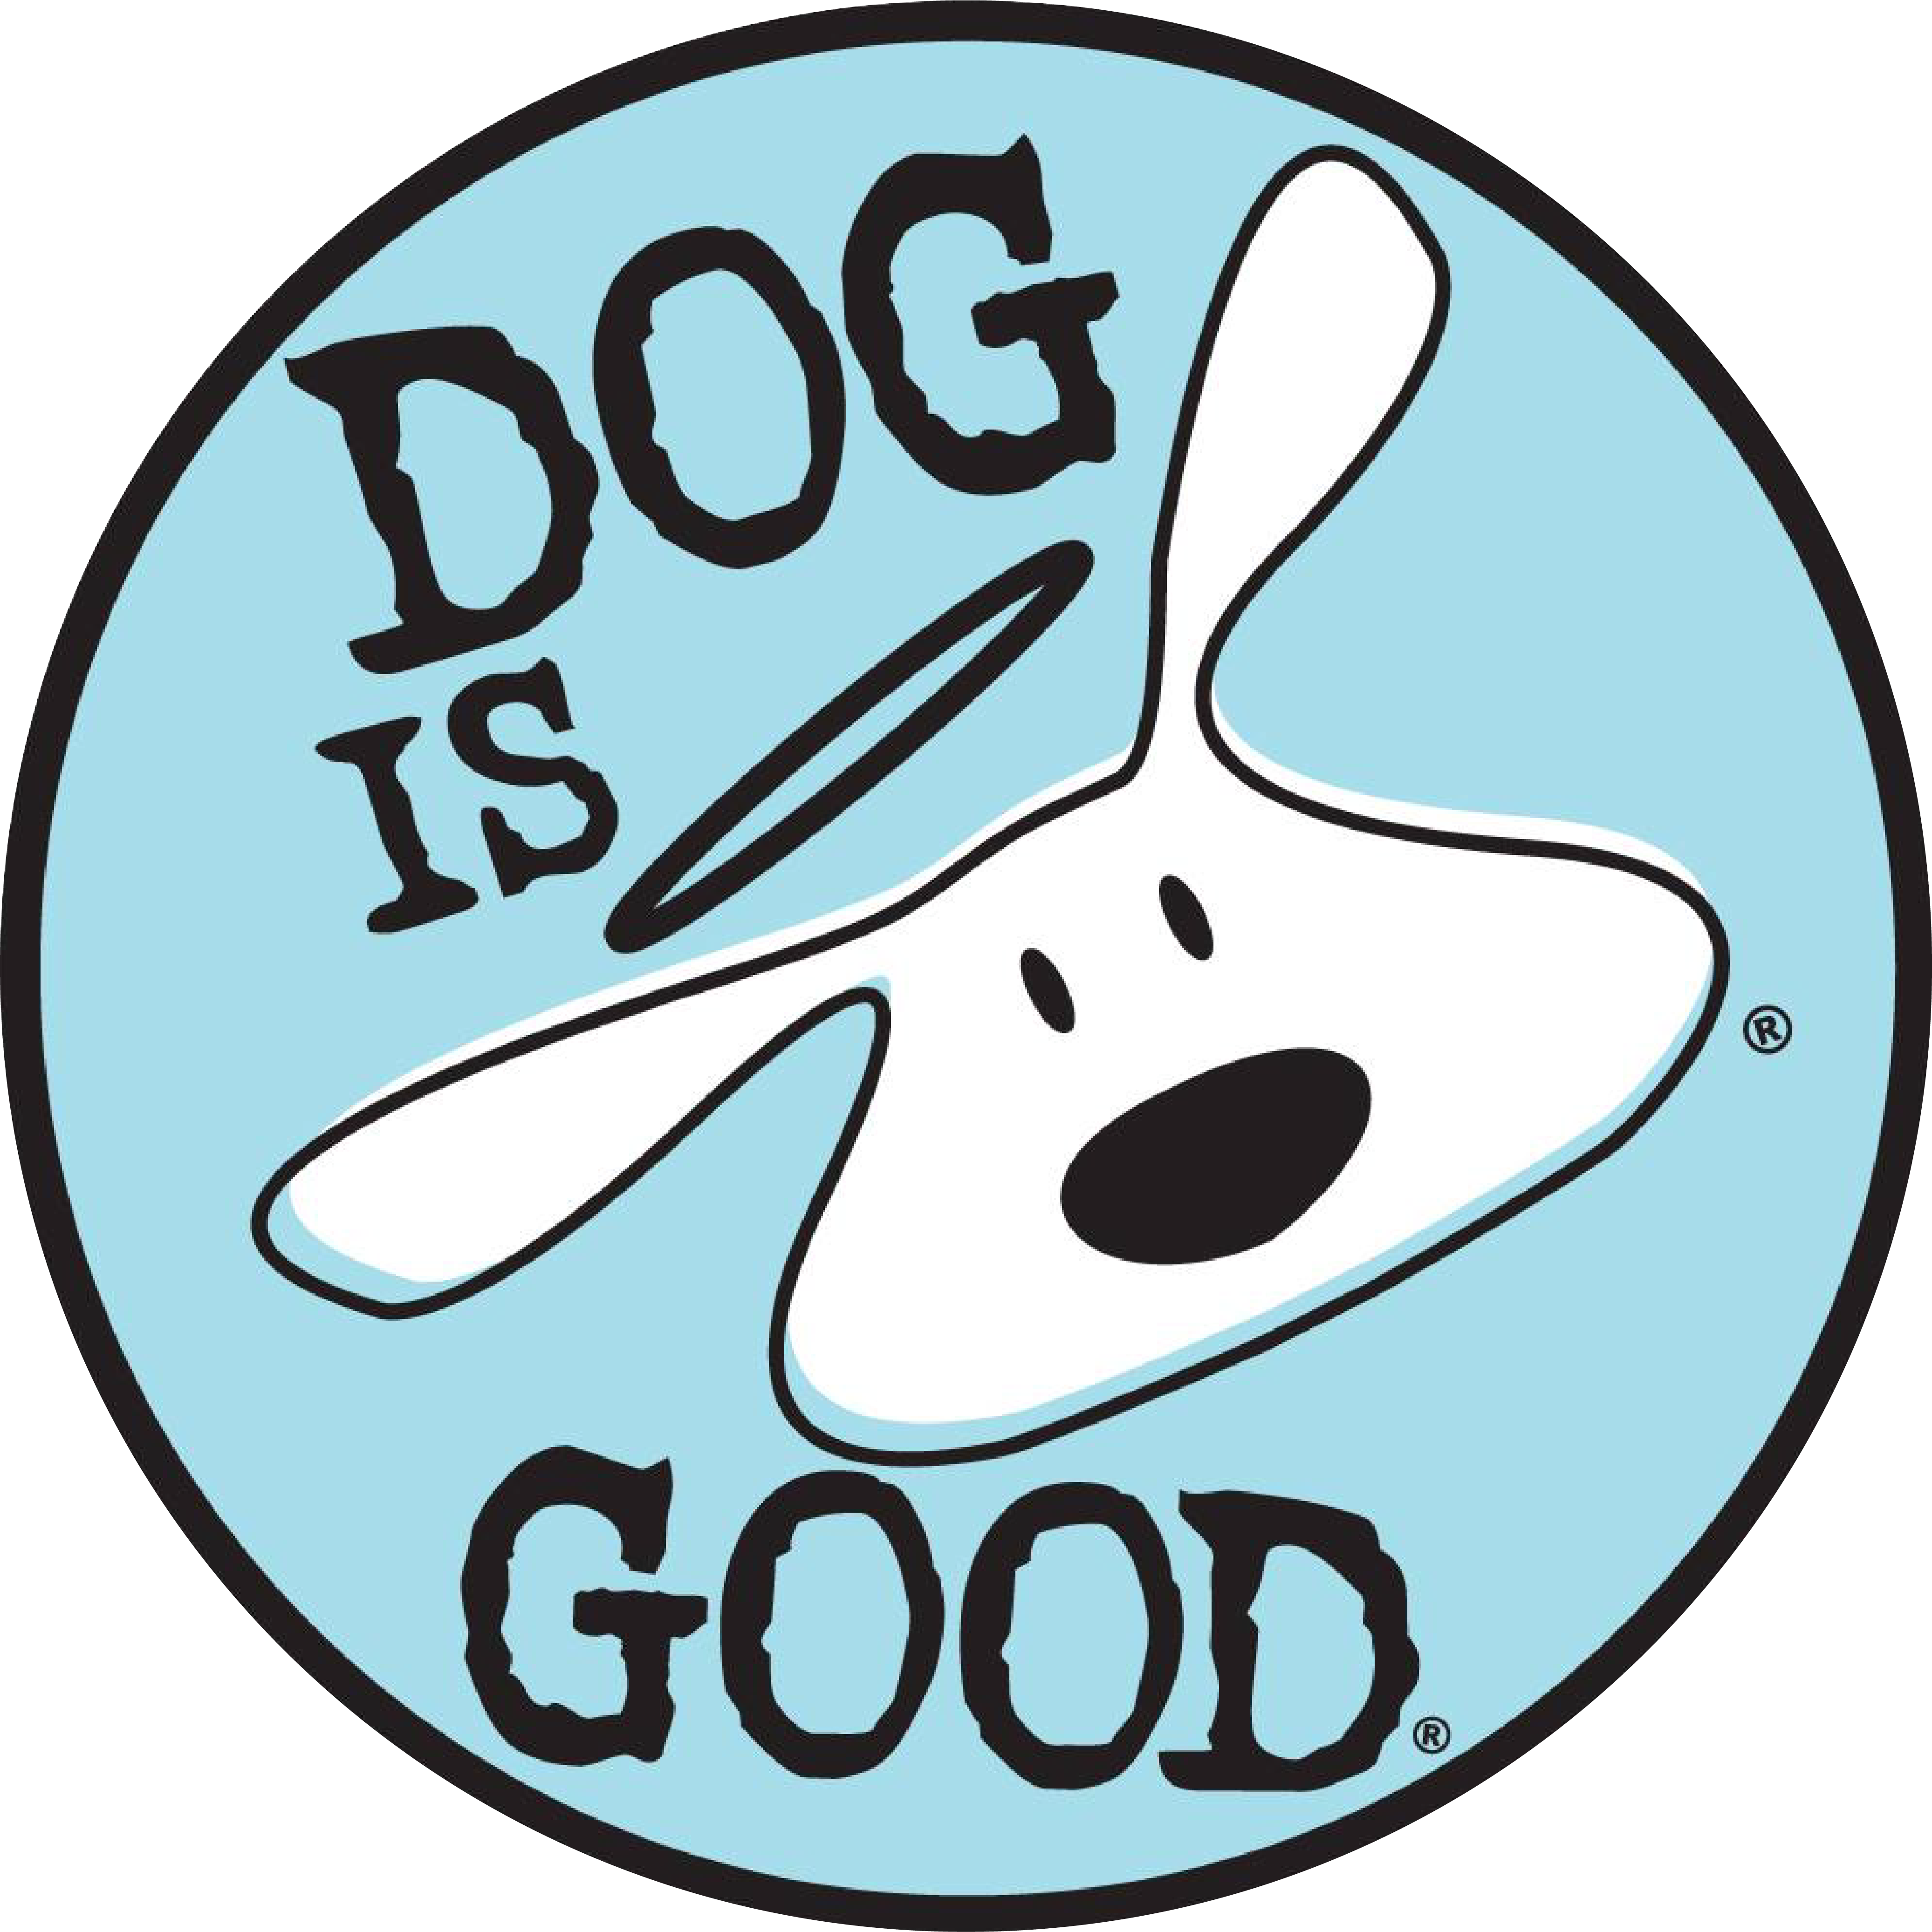 Dog is Good(ﾄﾞｯｸﾞｲｽﾞｸﾞｯﾄﾞ)